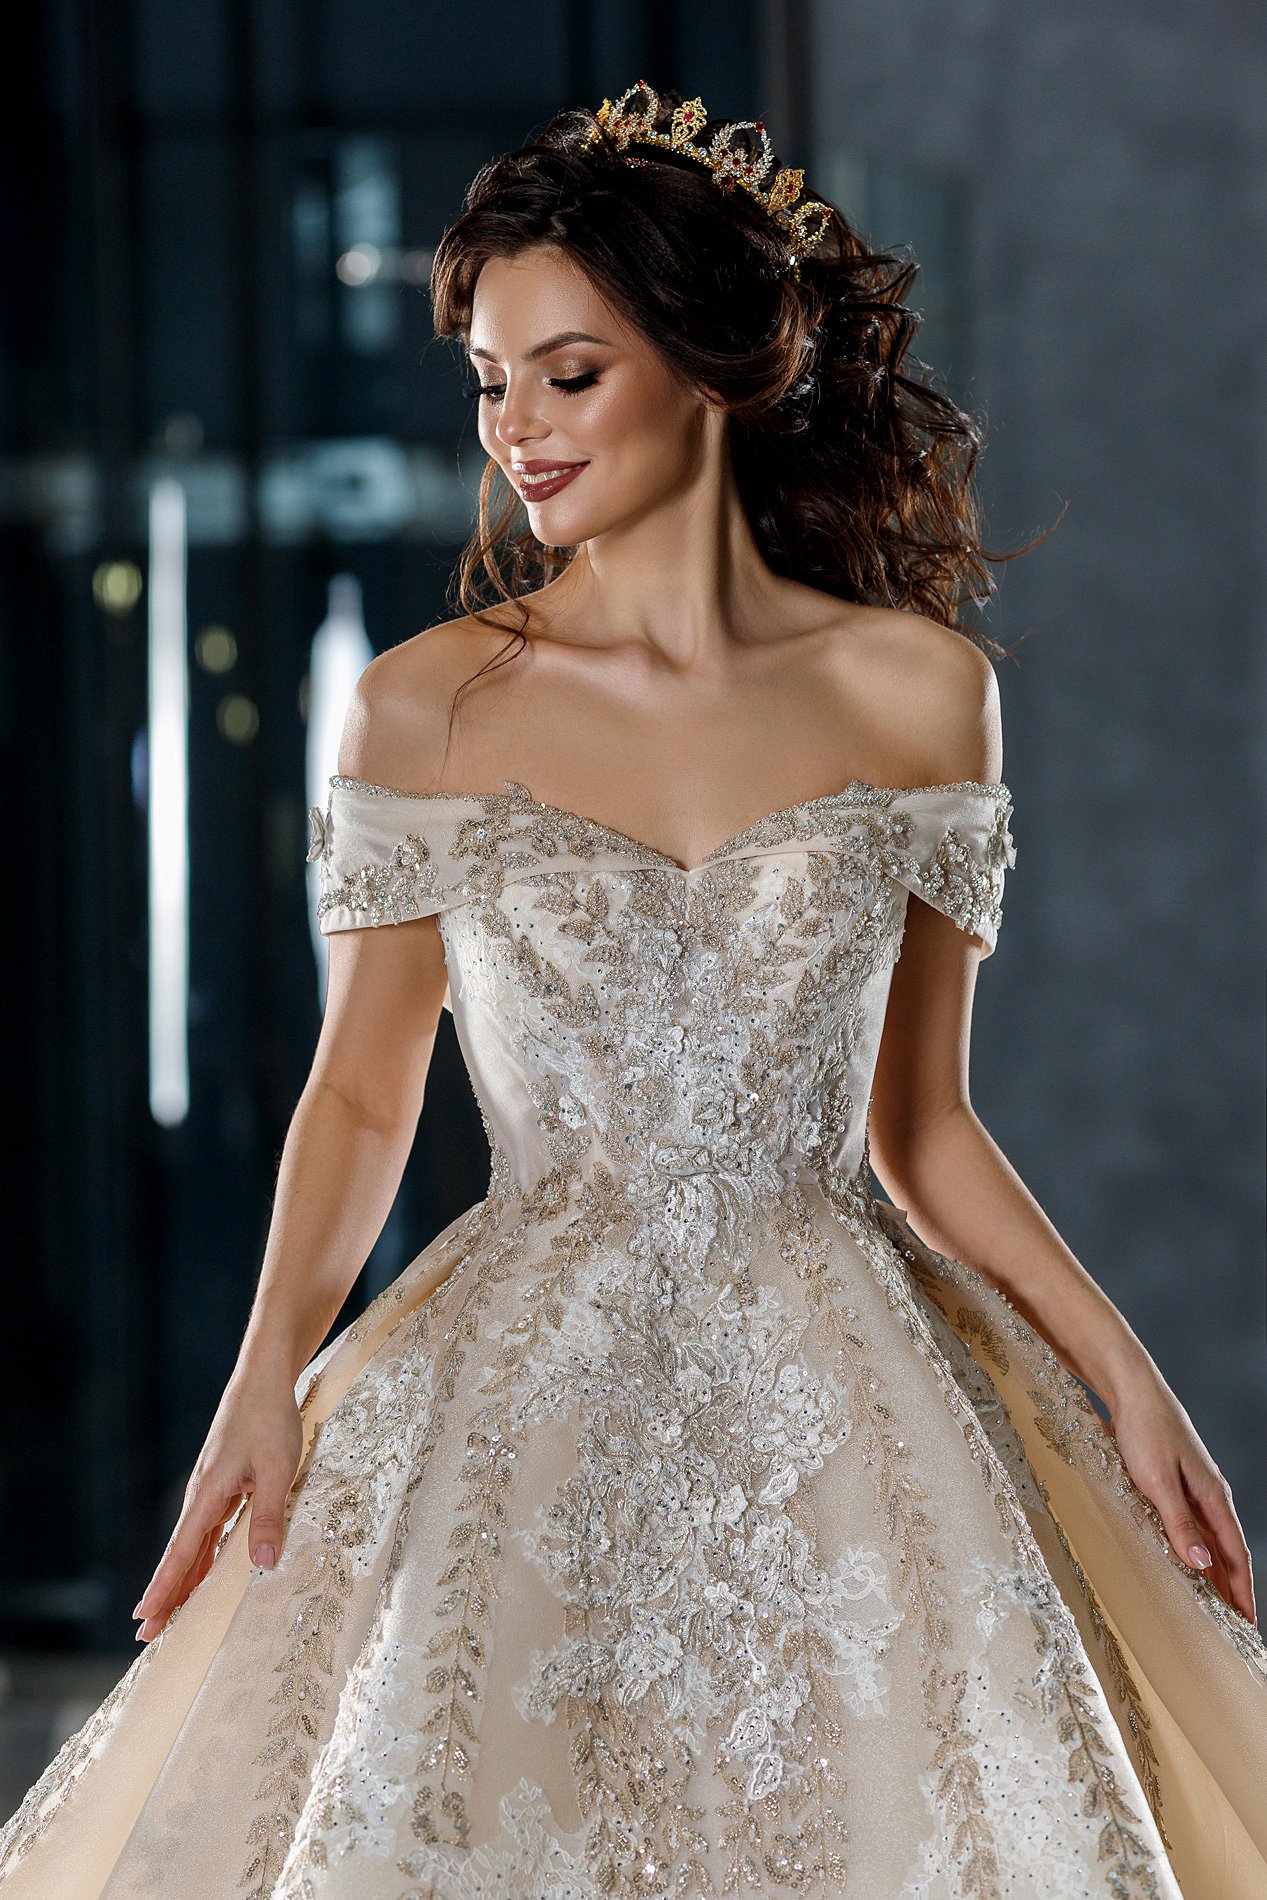 невеста, портрет, свадебное платье, красота, корона, wedding. dress, model, beauty, luxury, Анастасия Косарева